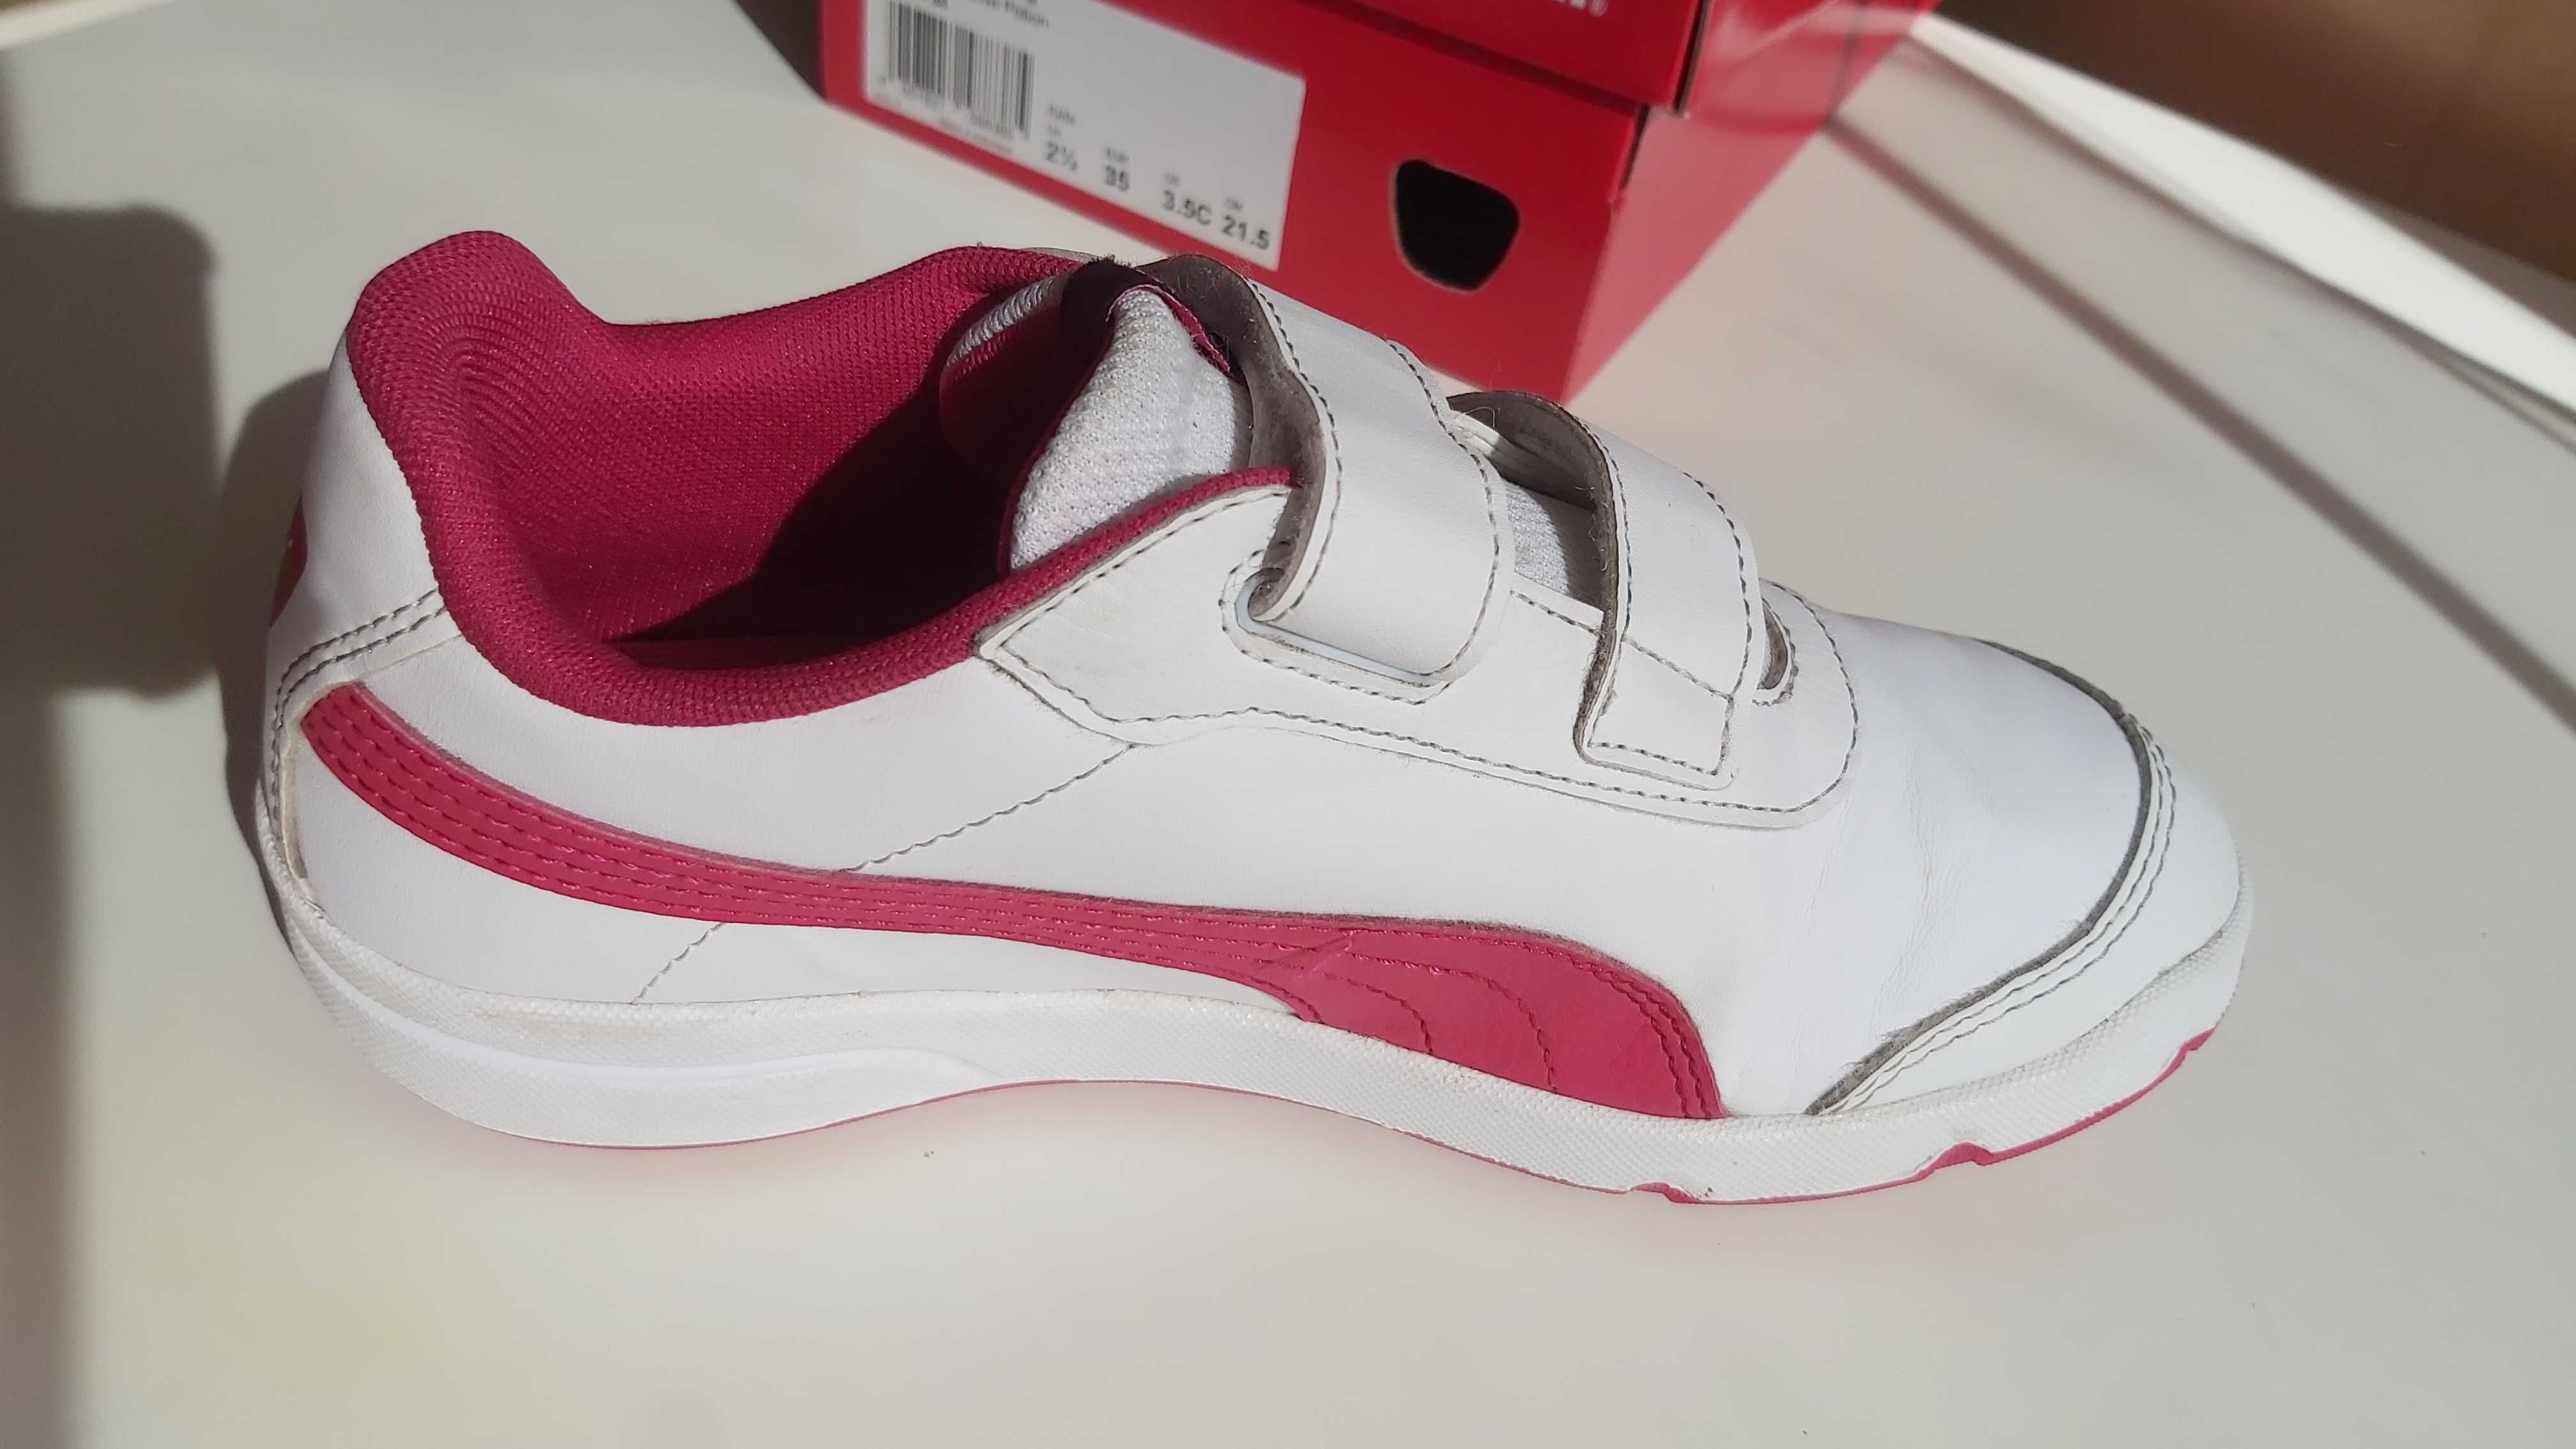 Puma buty buciki sportowe 35 biały czerwony